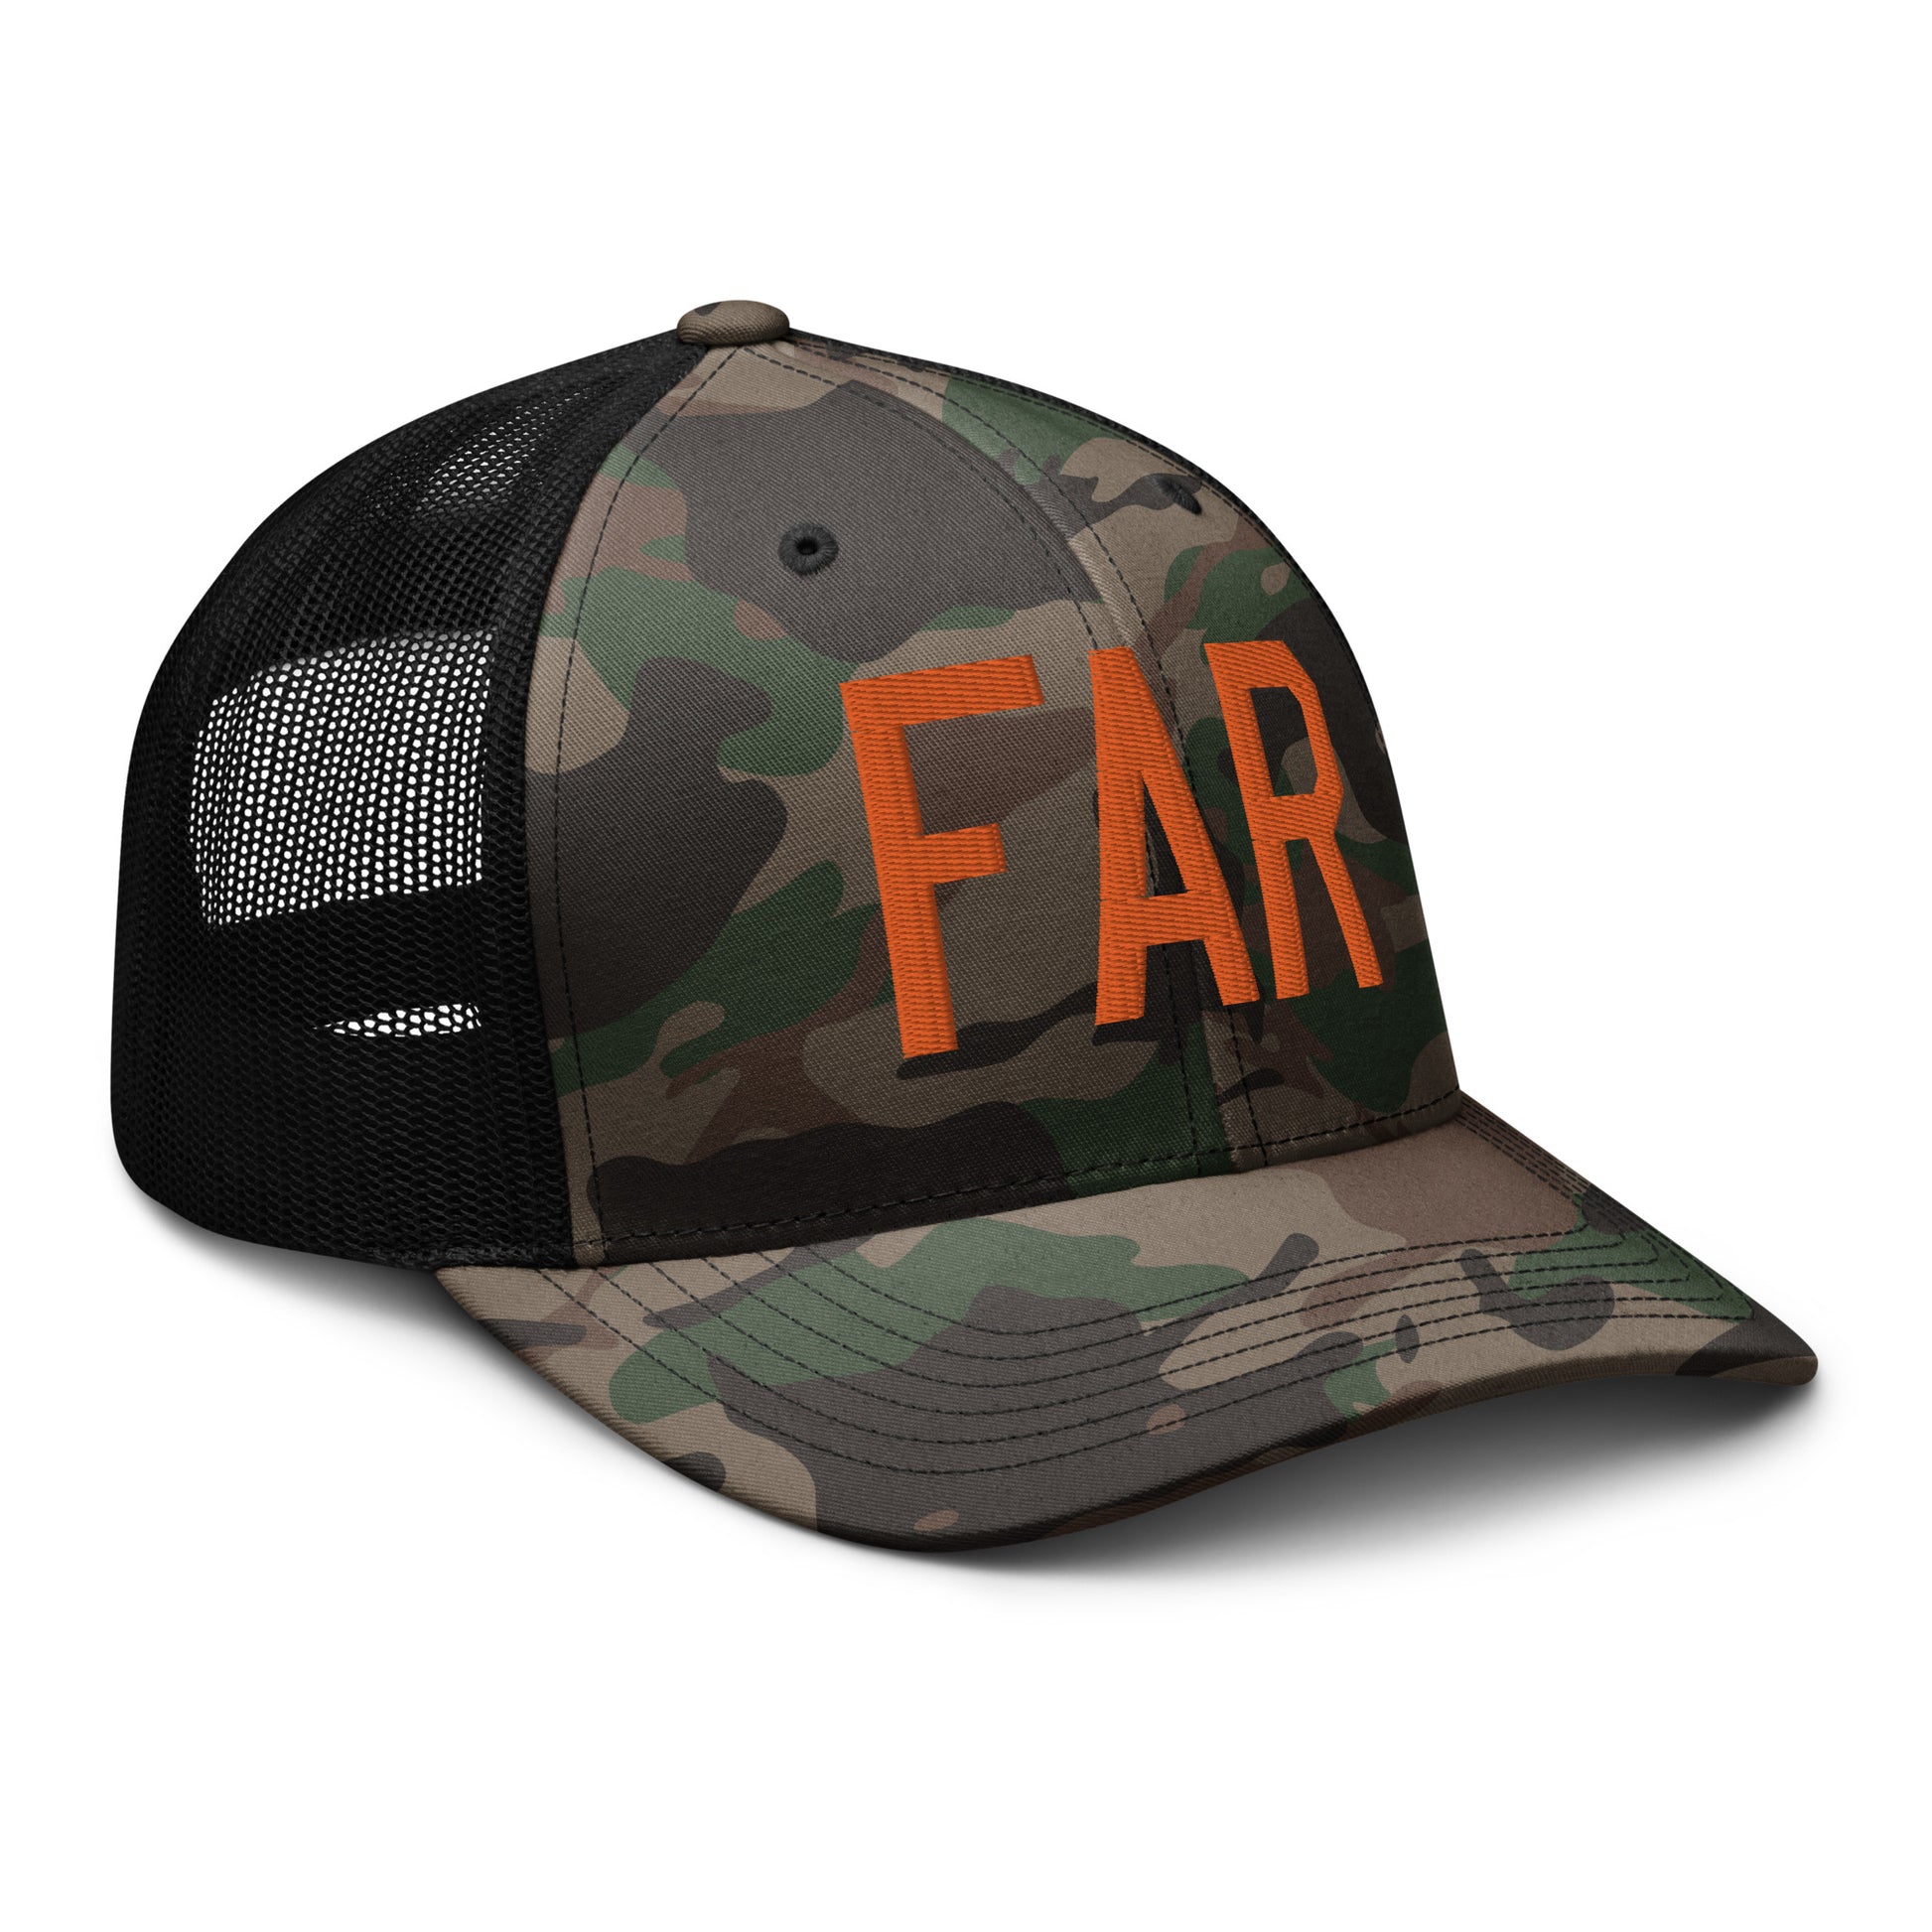 Airport Code Camouflage Trucker Hat - Orange • FAR Fargo • YHM Designs - Image 12